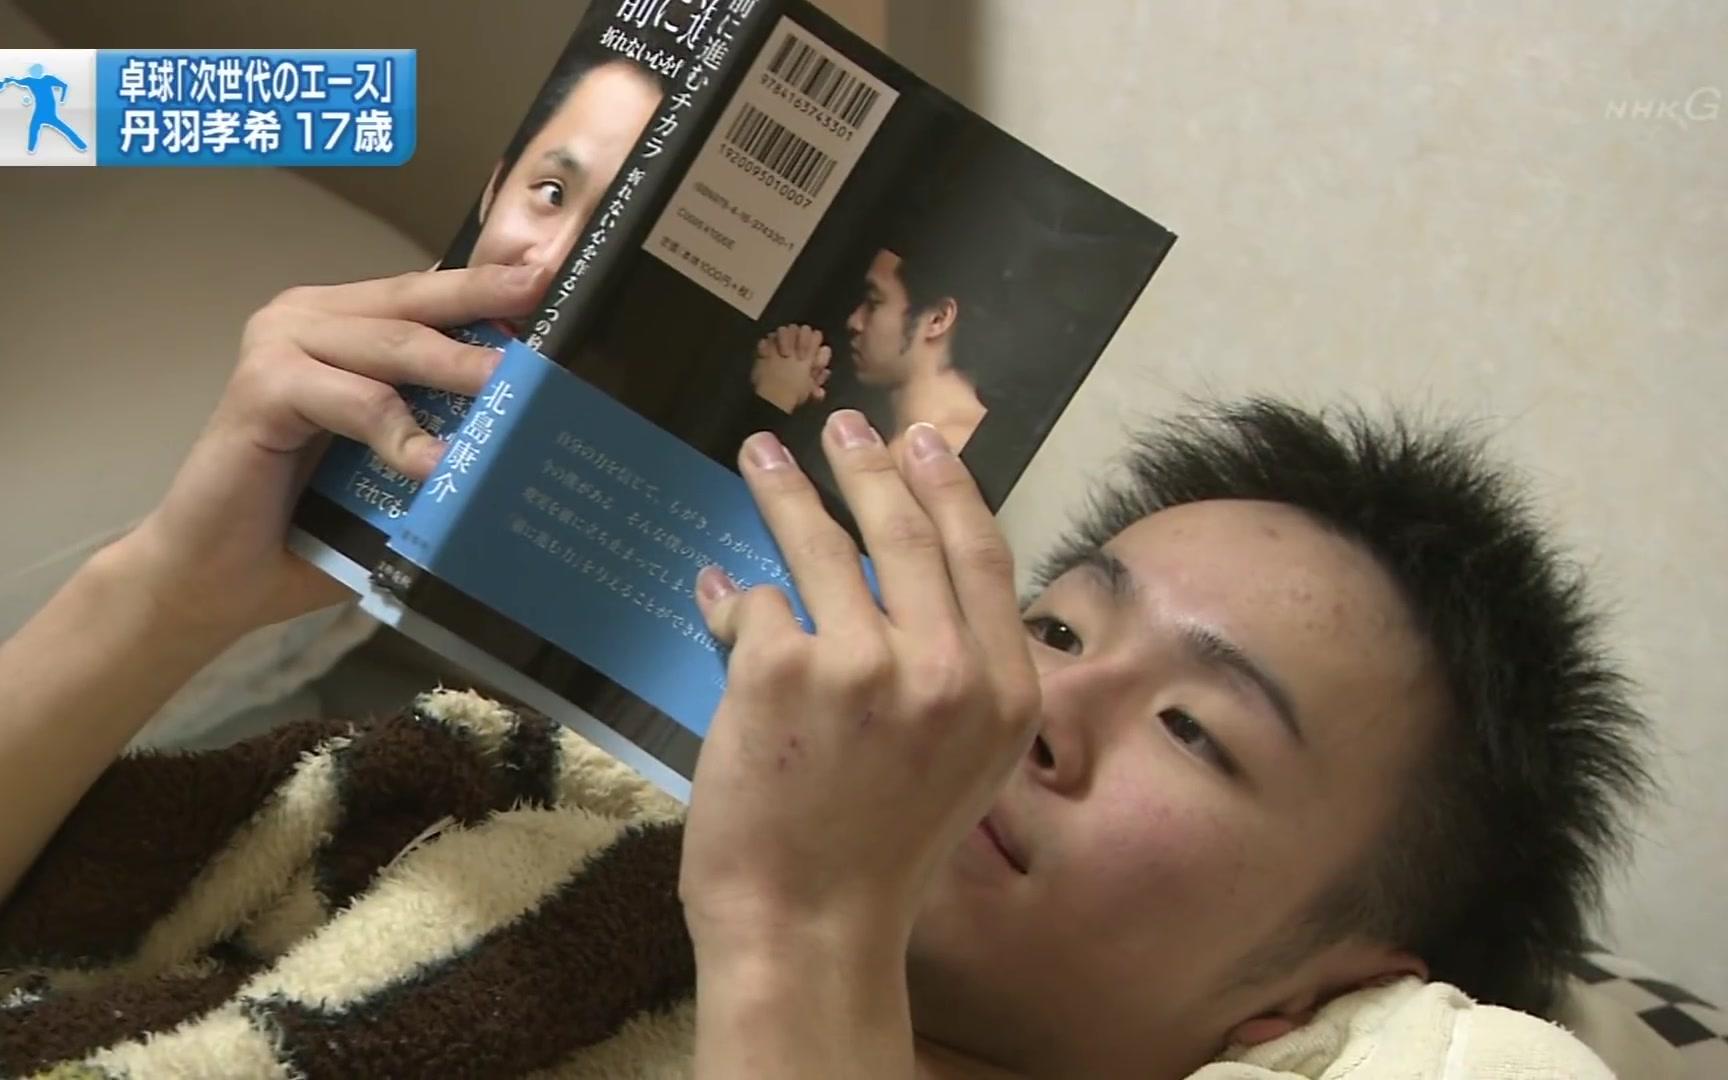 日本乒乓球的次世代天才 丹羽孝希17岁